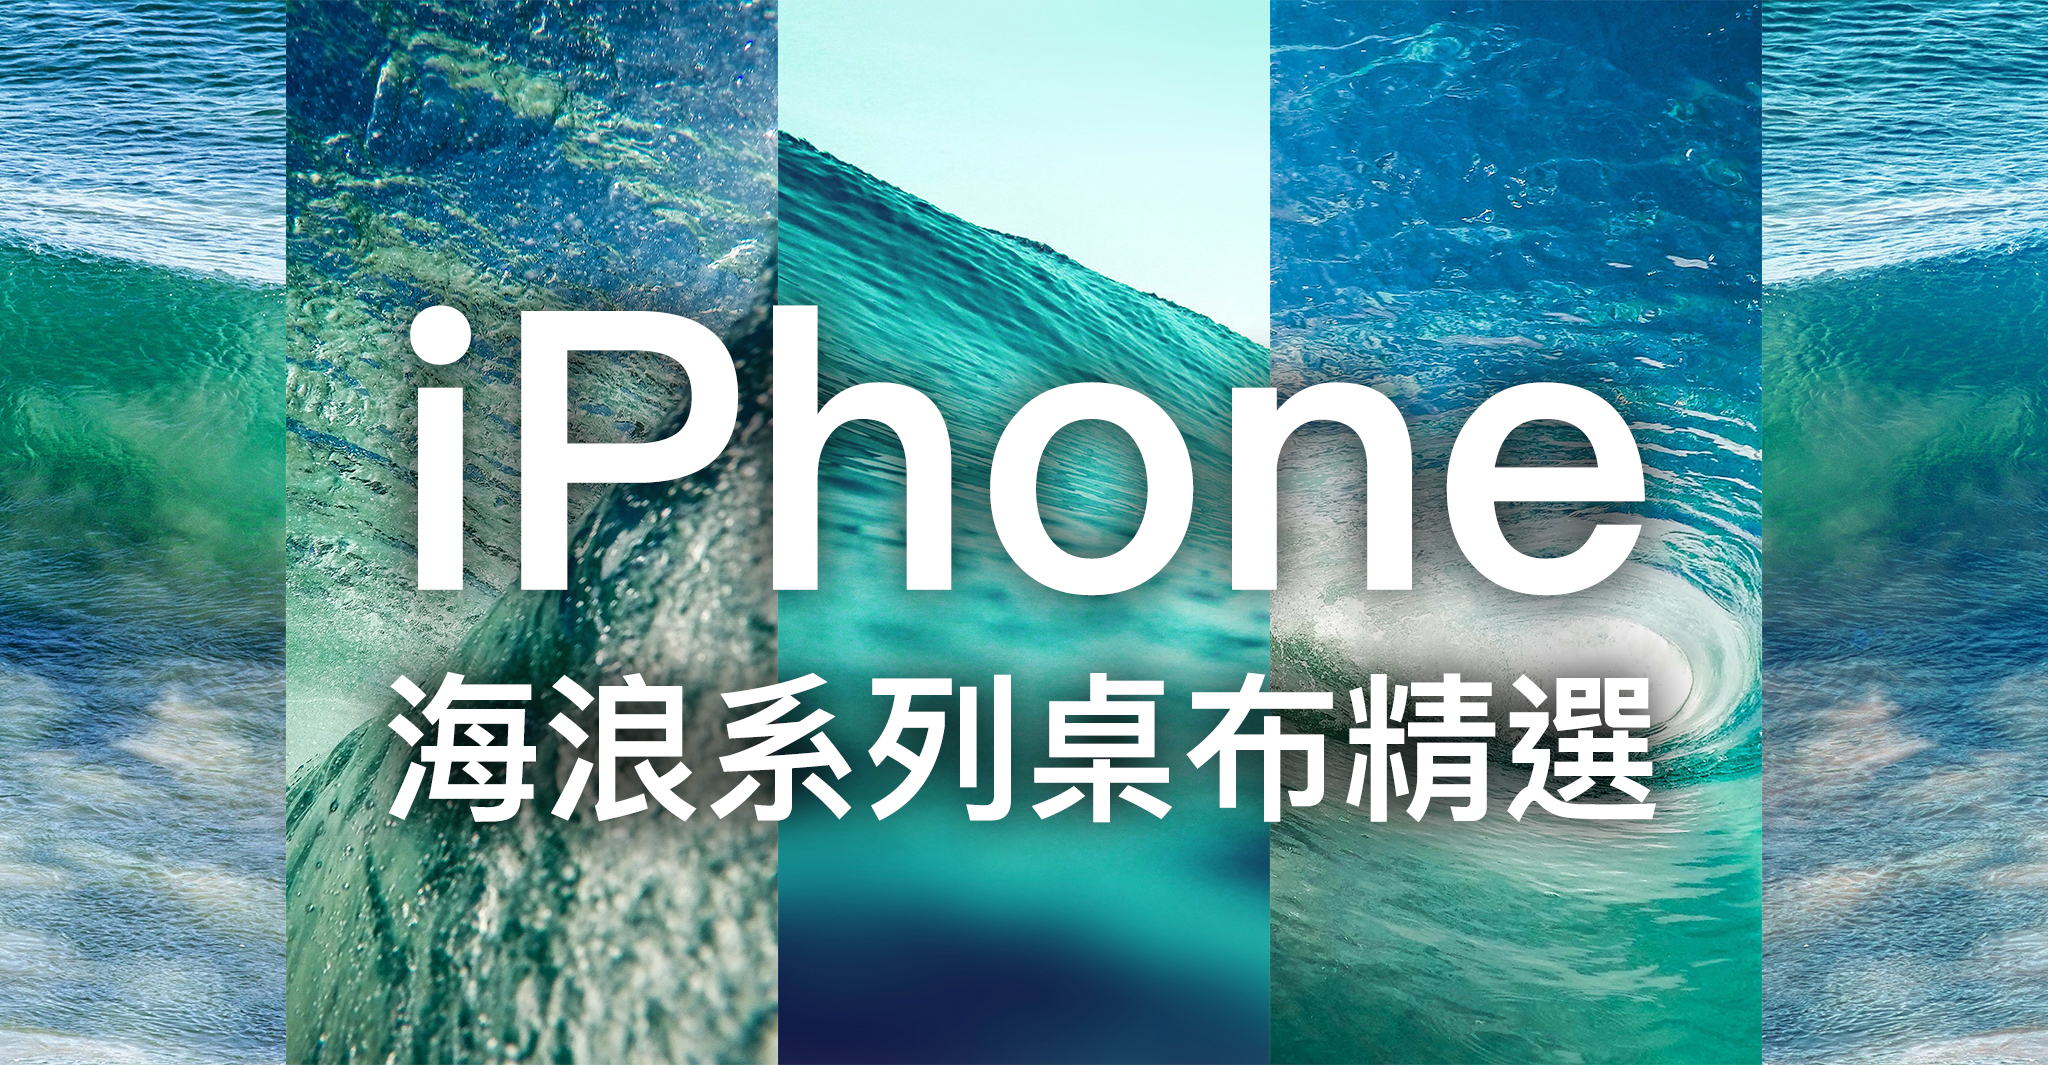 Iphone 桌布下載 精選 張海浪系列iphone 桌布 蘋果仁 Iphone Ios 好物推薦科技媒體